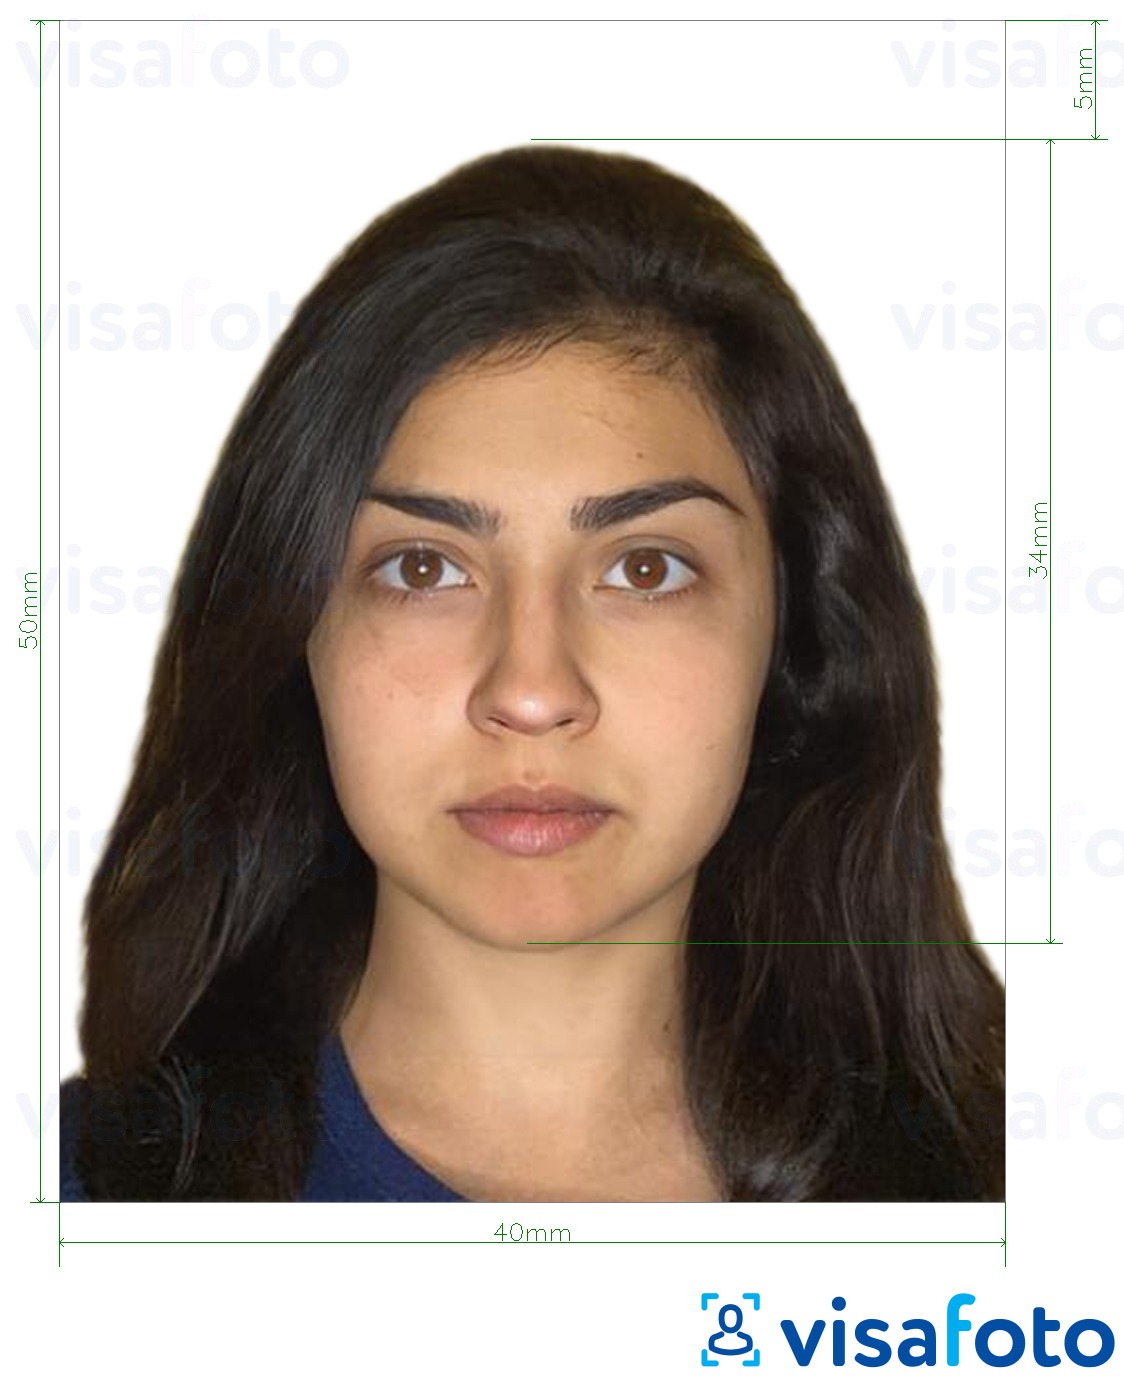 نمونه ی یک عکس برای پاسپورت نیکاراگوئه 4x5 سانتی متر با مشخصات دقیق